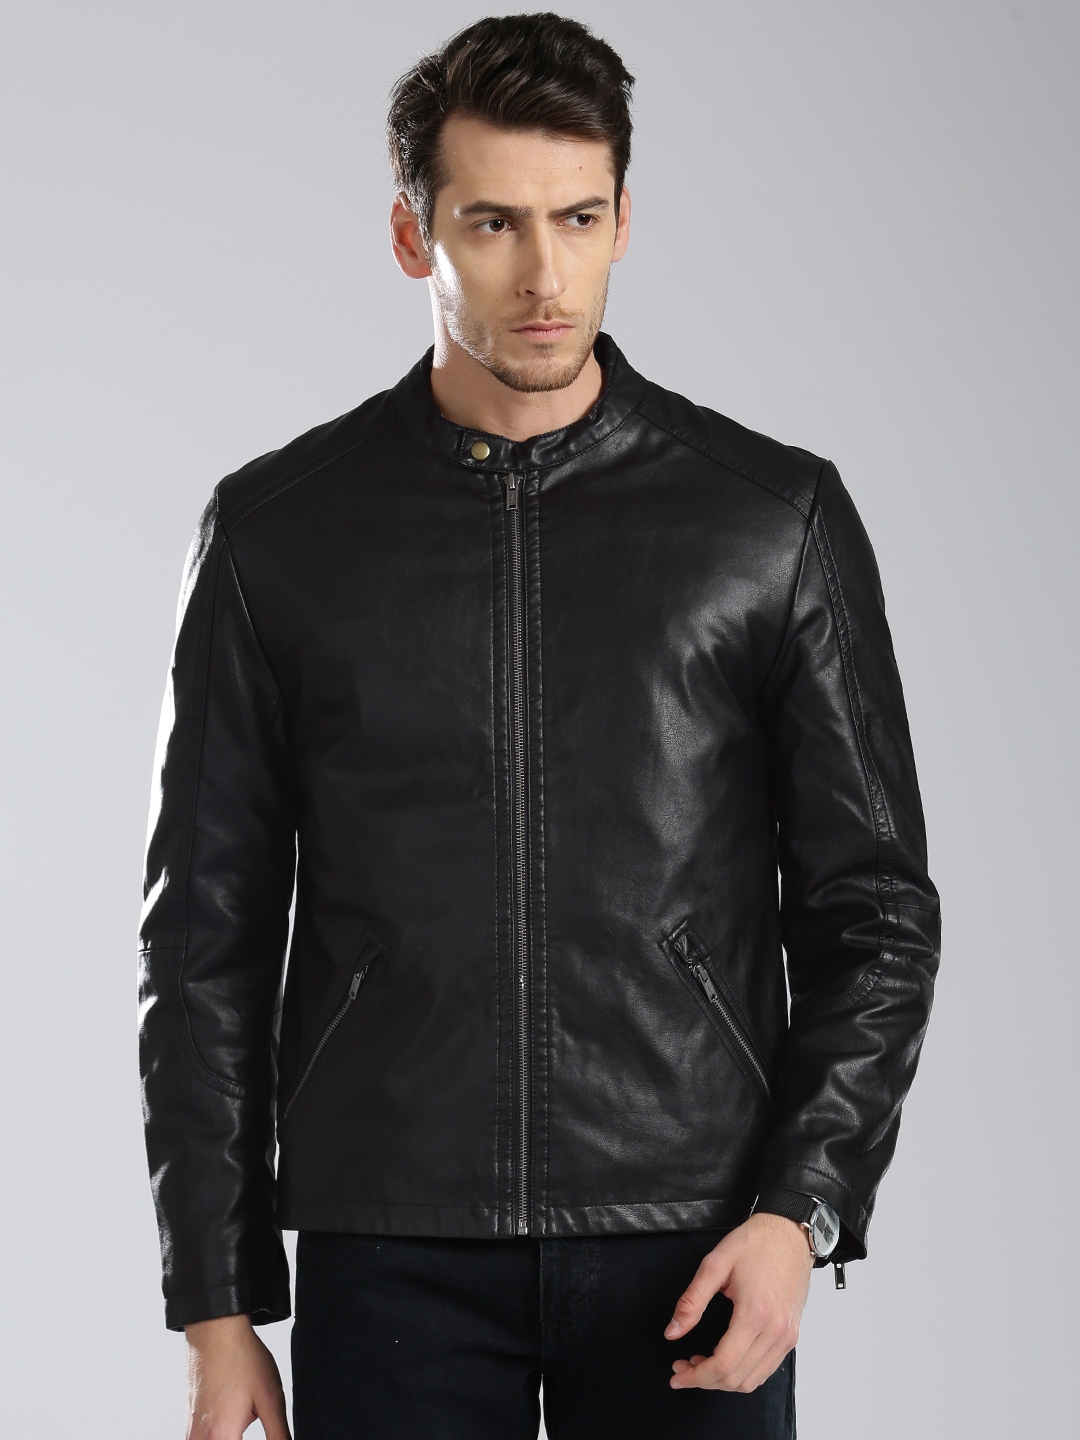 Buy Levis Men Black Solid Leather Jacket - Jackets for Men 2451960 | Myntra